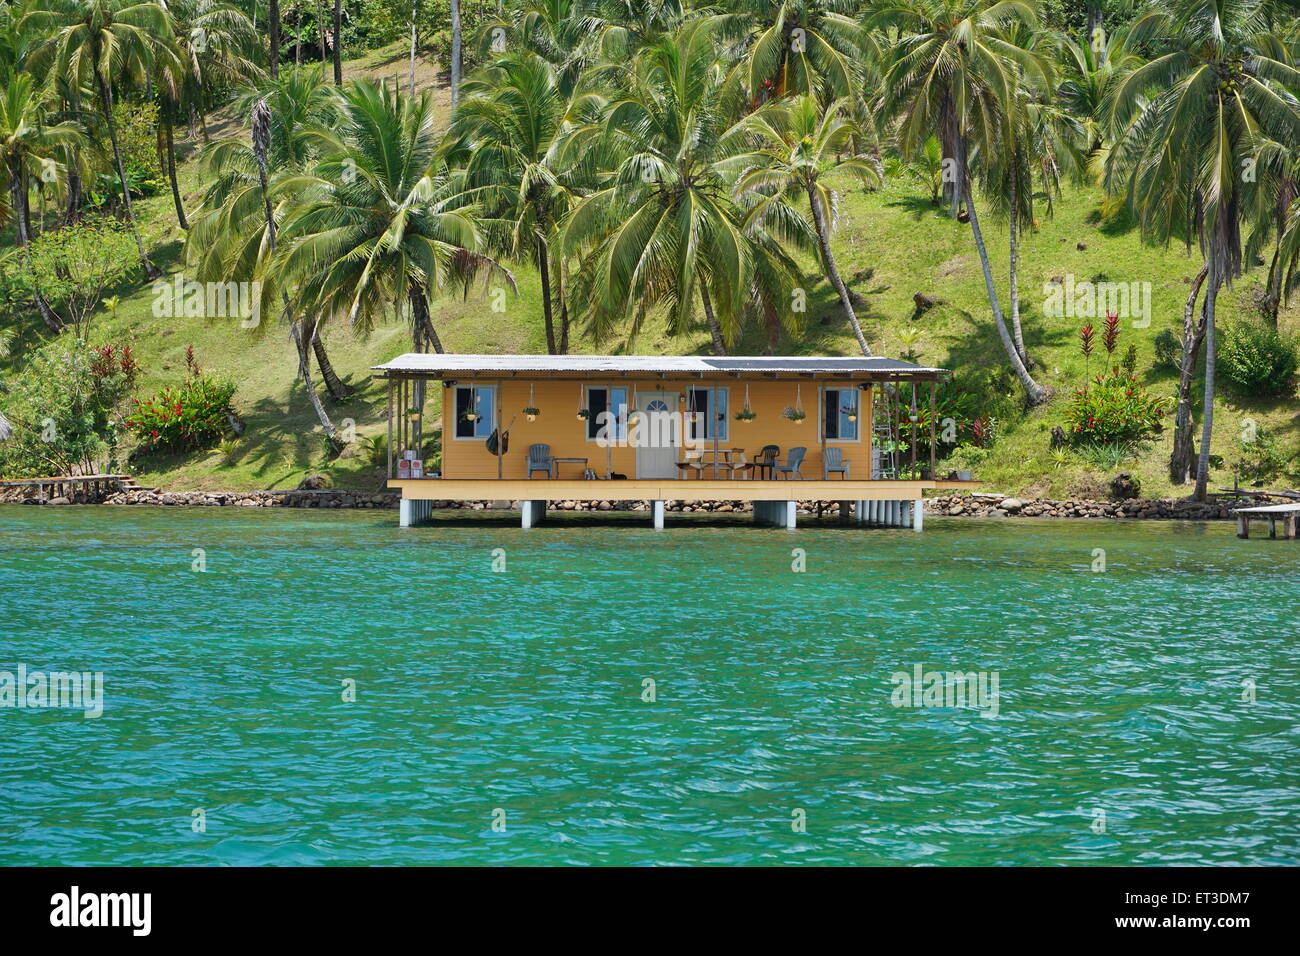 Proprietà costiere con palme da cocco e da una casa tropicale sull'acqua, il mare dei Caraibi, Panama America Centrale Foto Stock